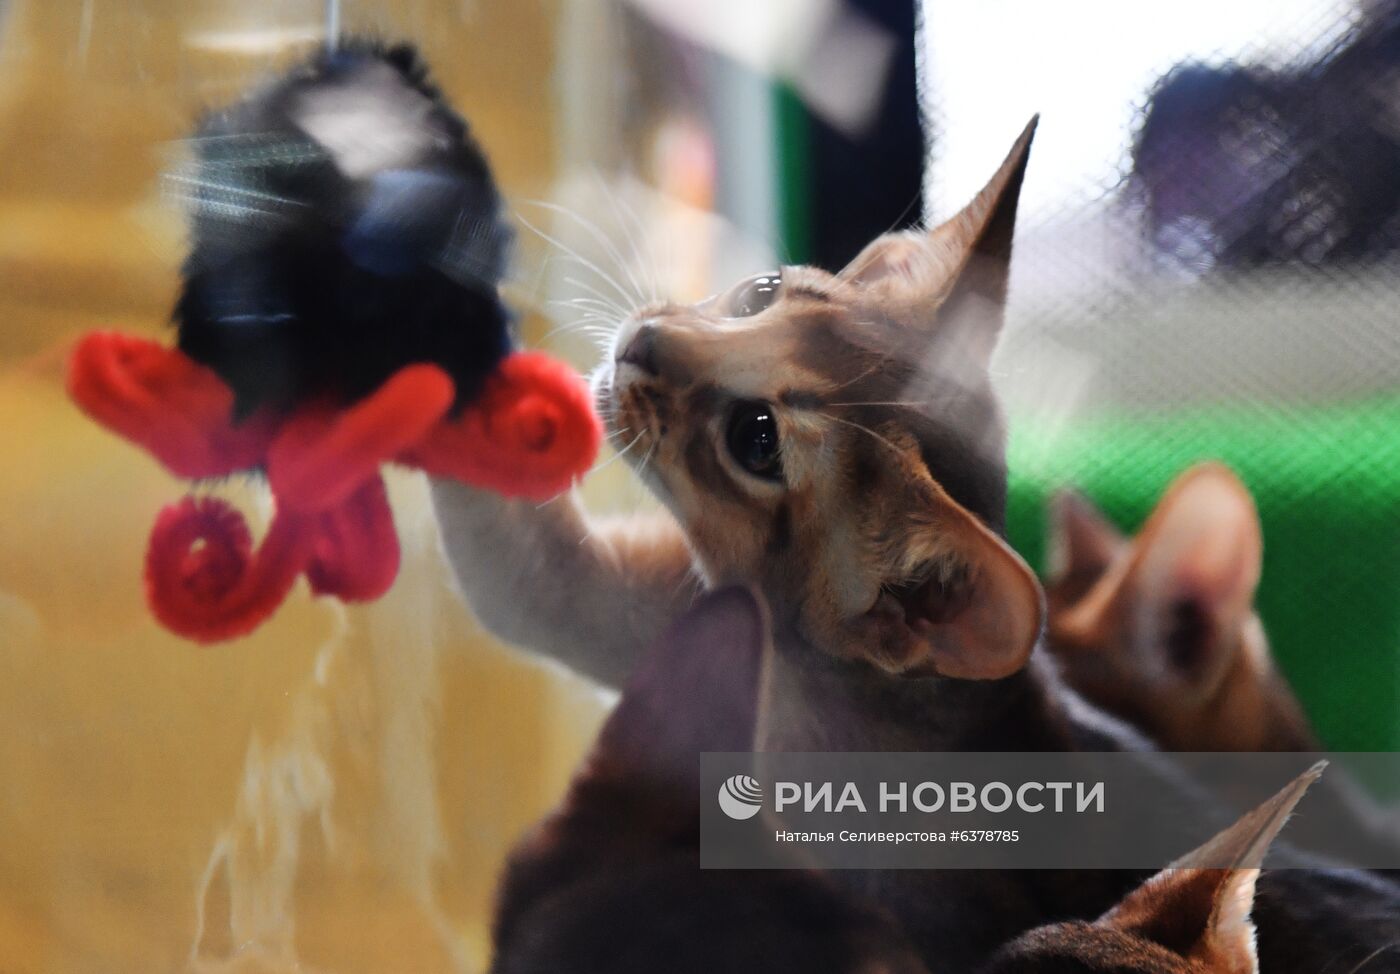 Выставка кошек "КоШарики-Шоу" в Москве